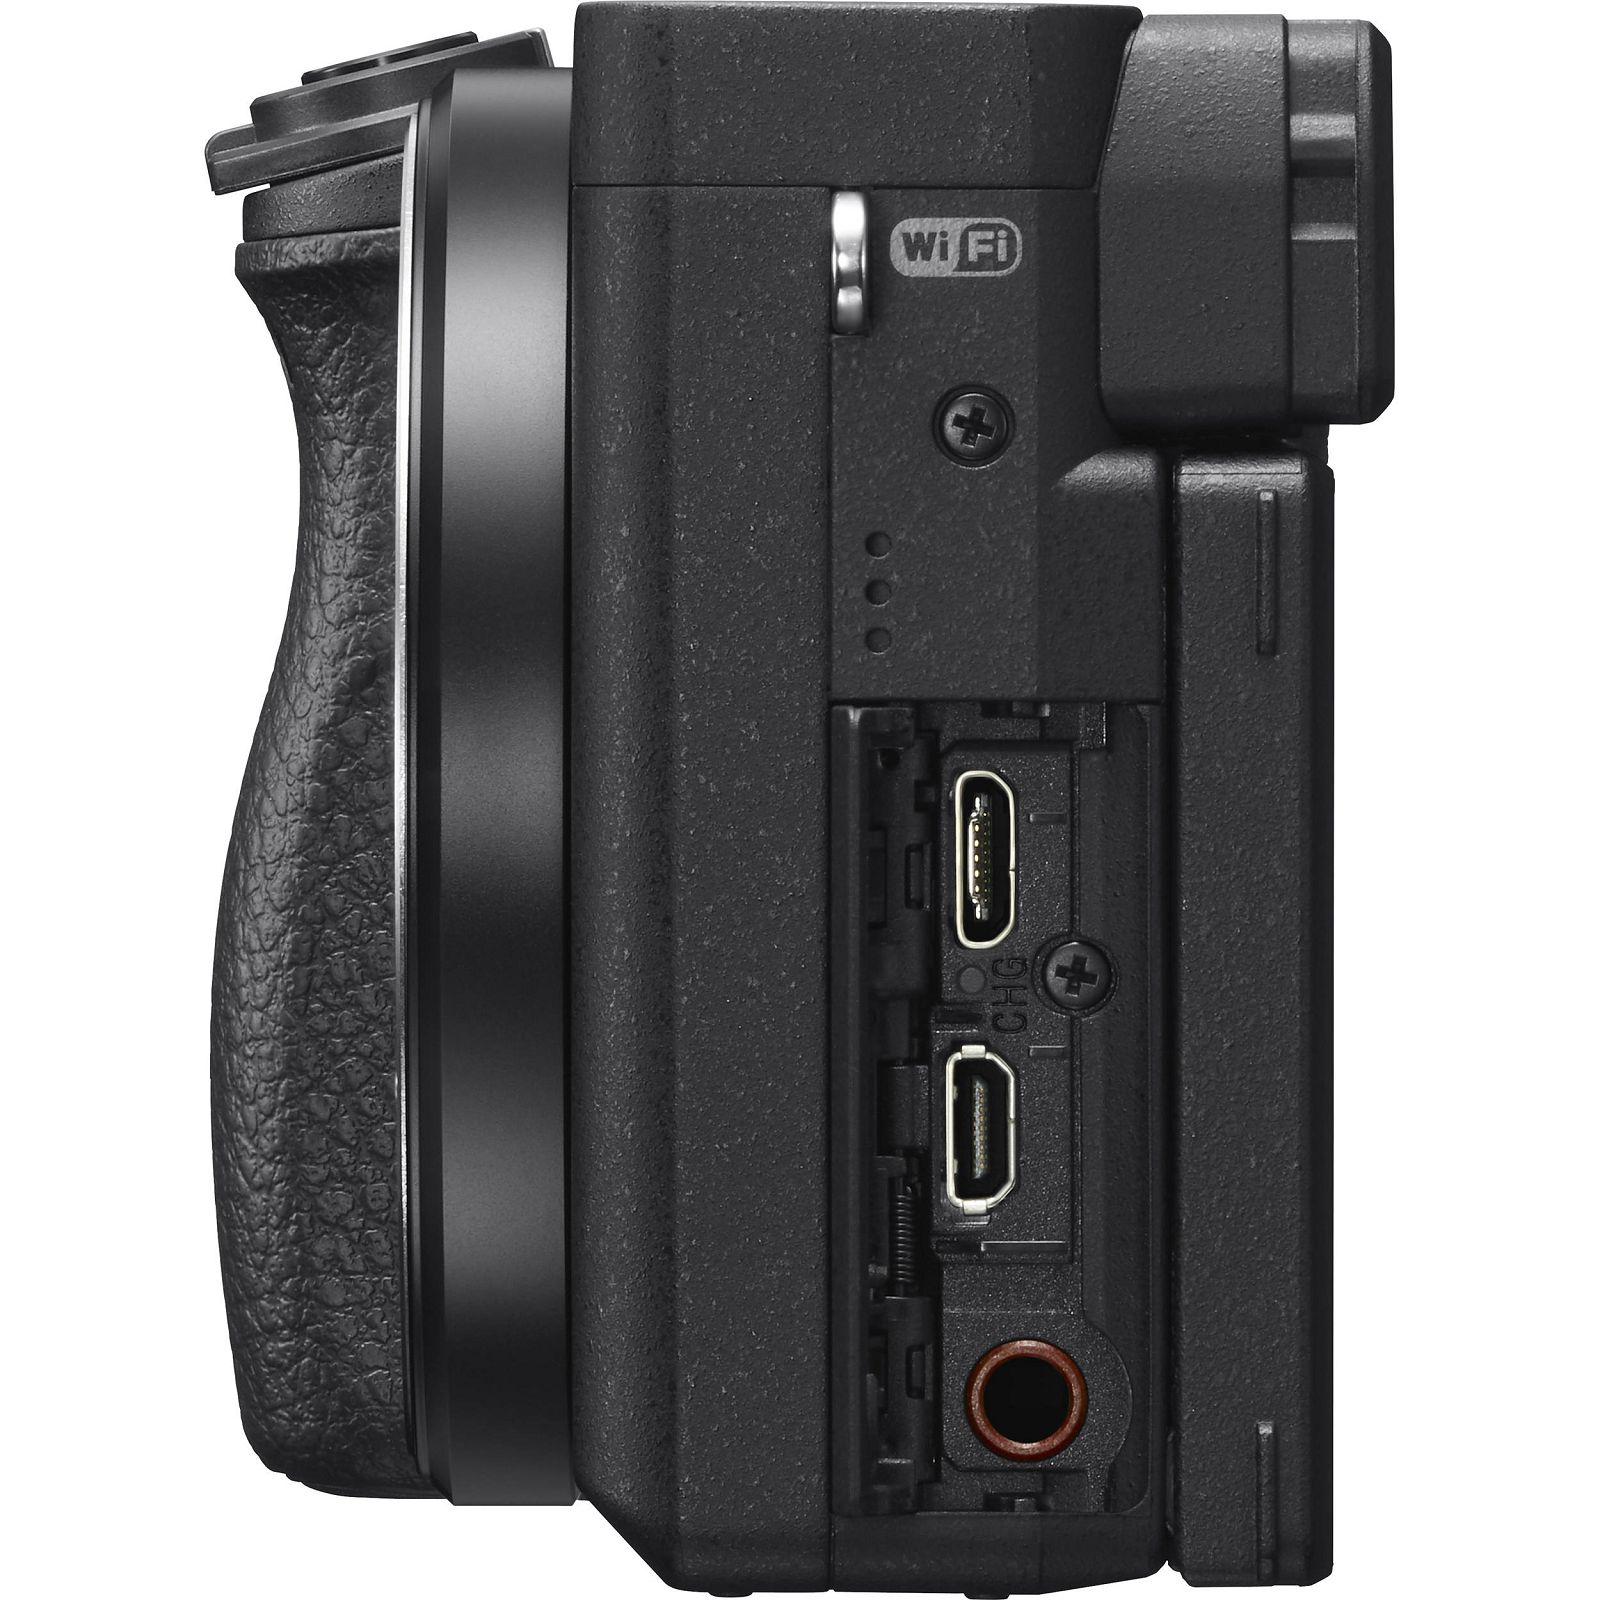 Sony Alpha a6400 + 18-135 f/3.5-5.6 OSS KIT Black Mirrorless Digital Camera crni bezrcalni digitalni fotoaparat i zoom objektiv SEL18135 18-135mm F3.5-5.6 ILCE-6400MB ILCE6400MB ILCE6400MB.CEC